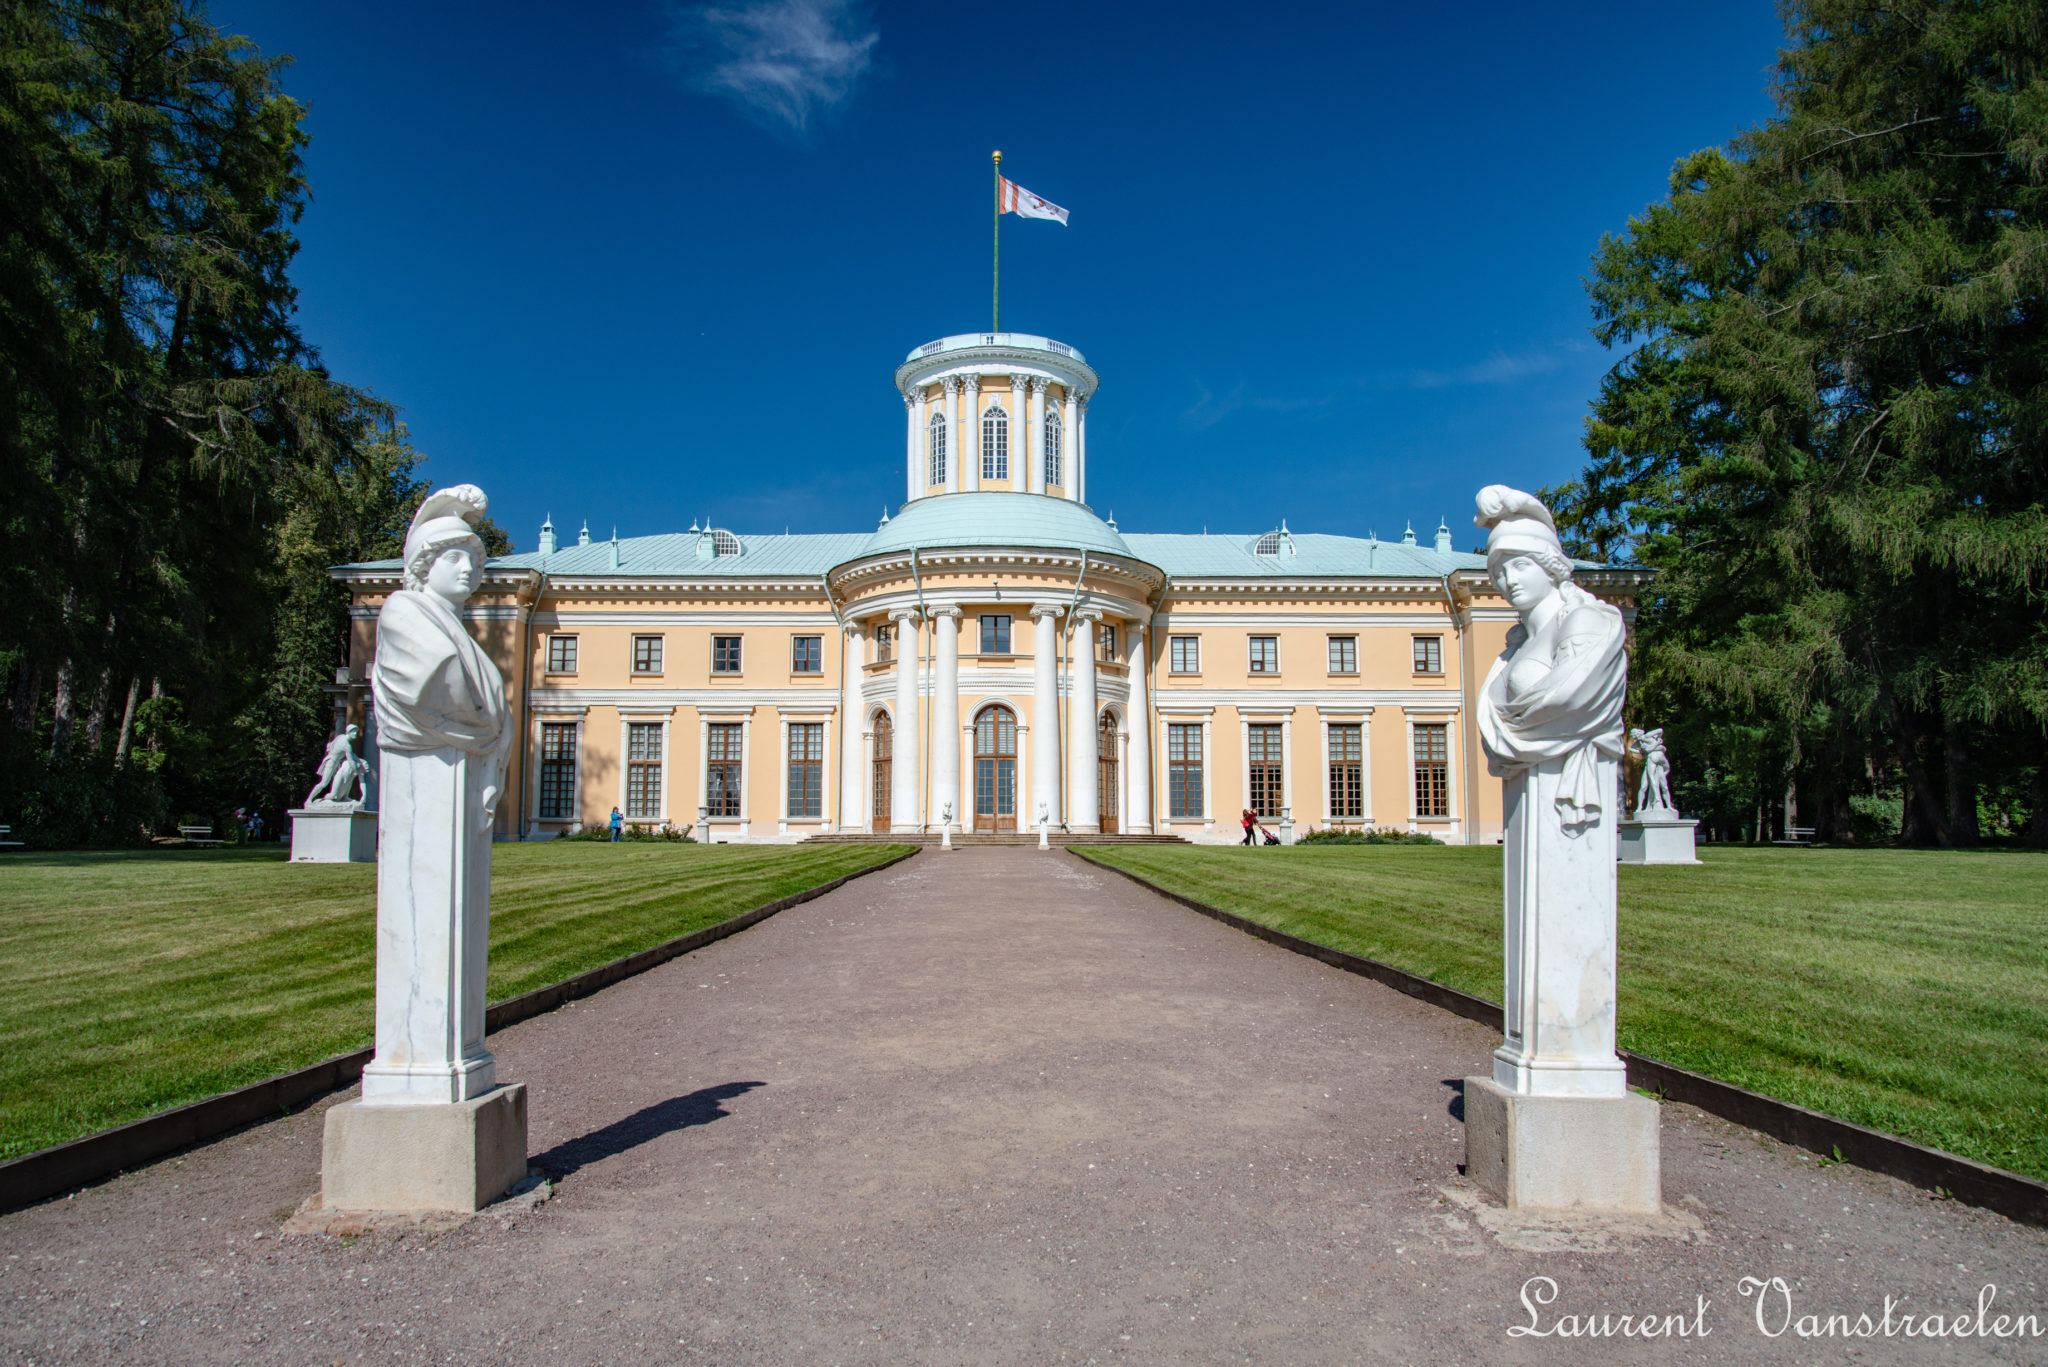 Arkhangelskoye Palace - Russia
